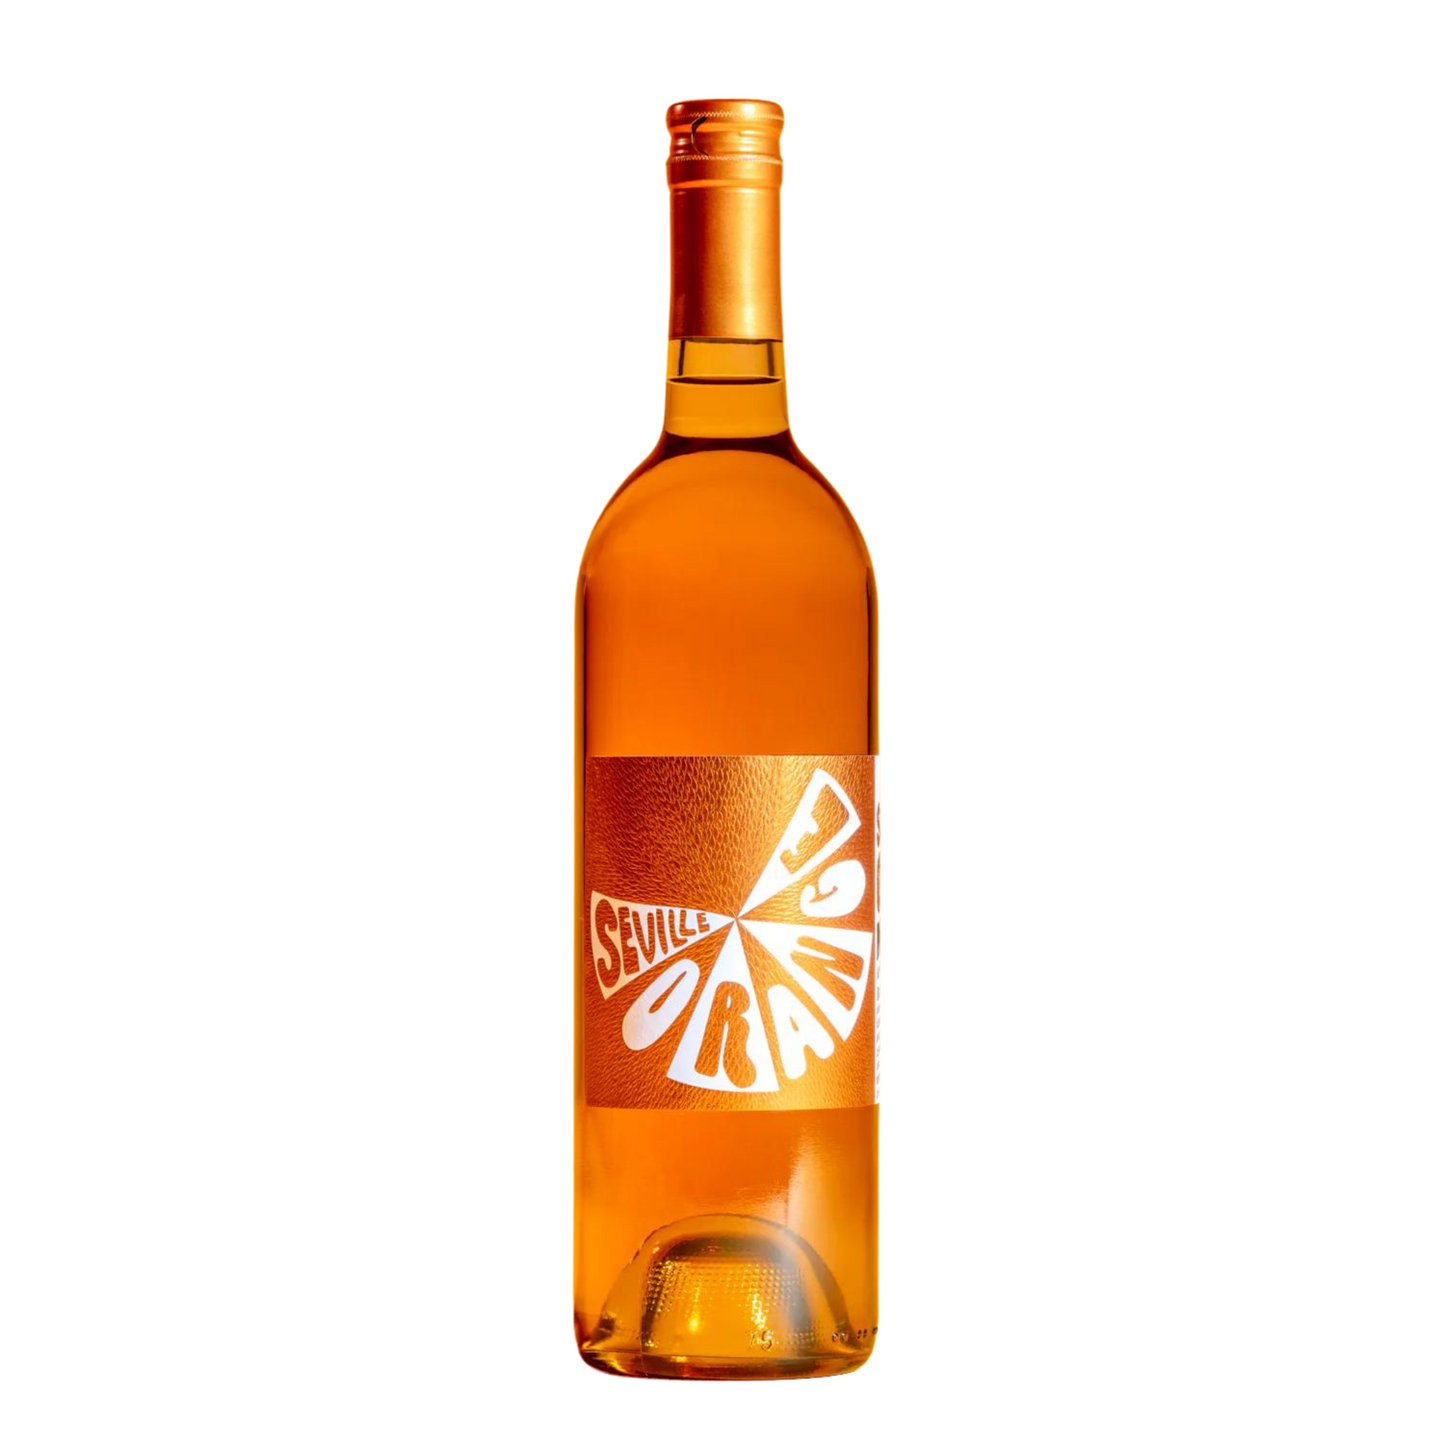 Mommenpop Vin D'Seville Orange Vermouth (375 ml)